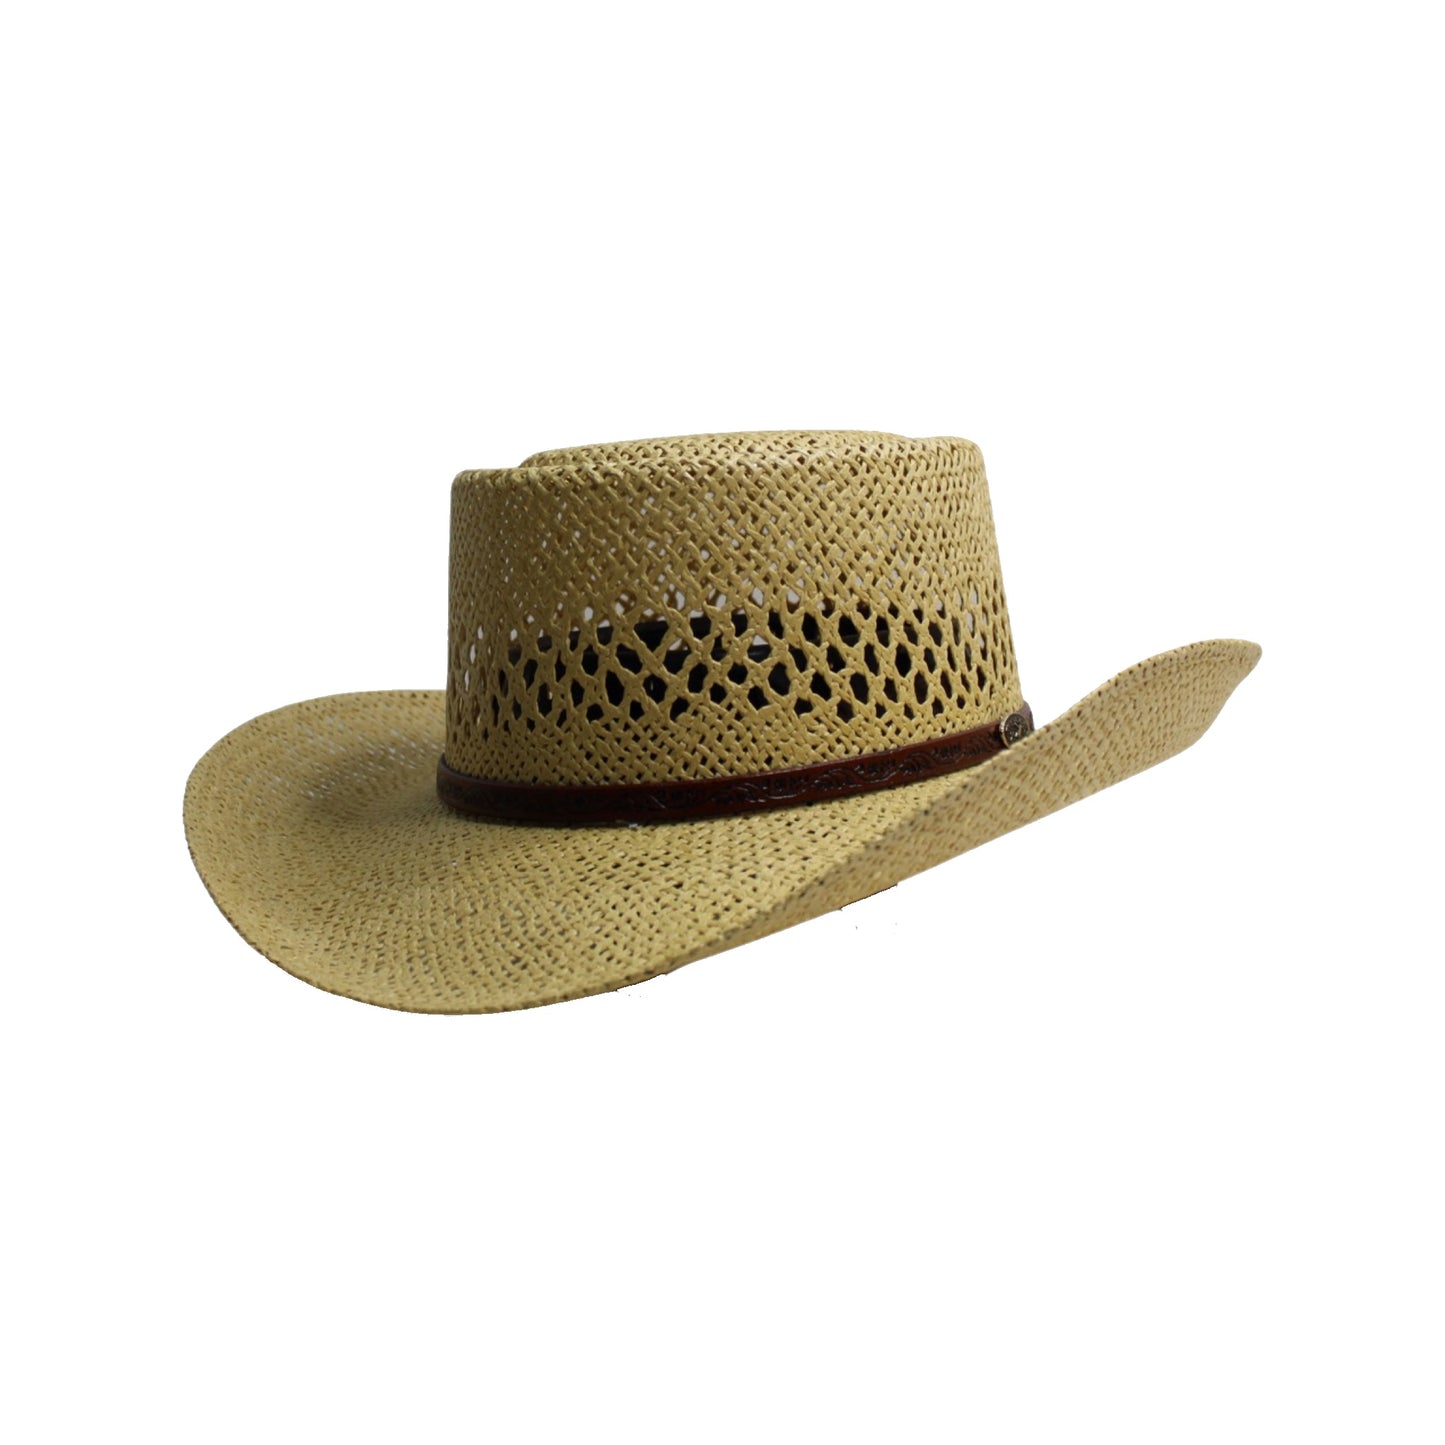 Cerrito Hats: Straw